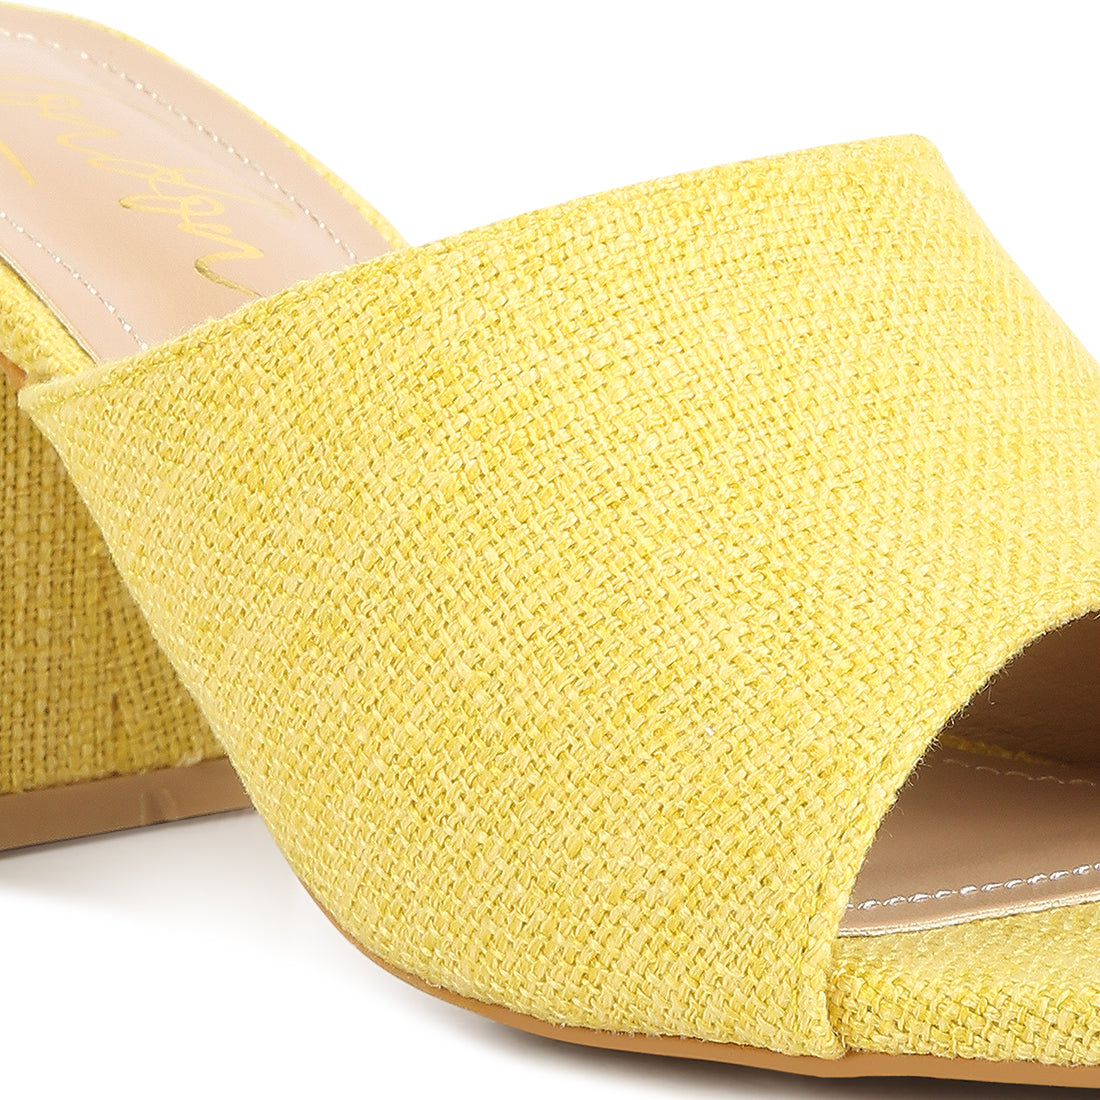 block heel slip on sandals#color_yellow